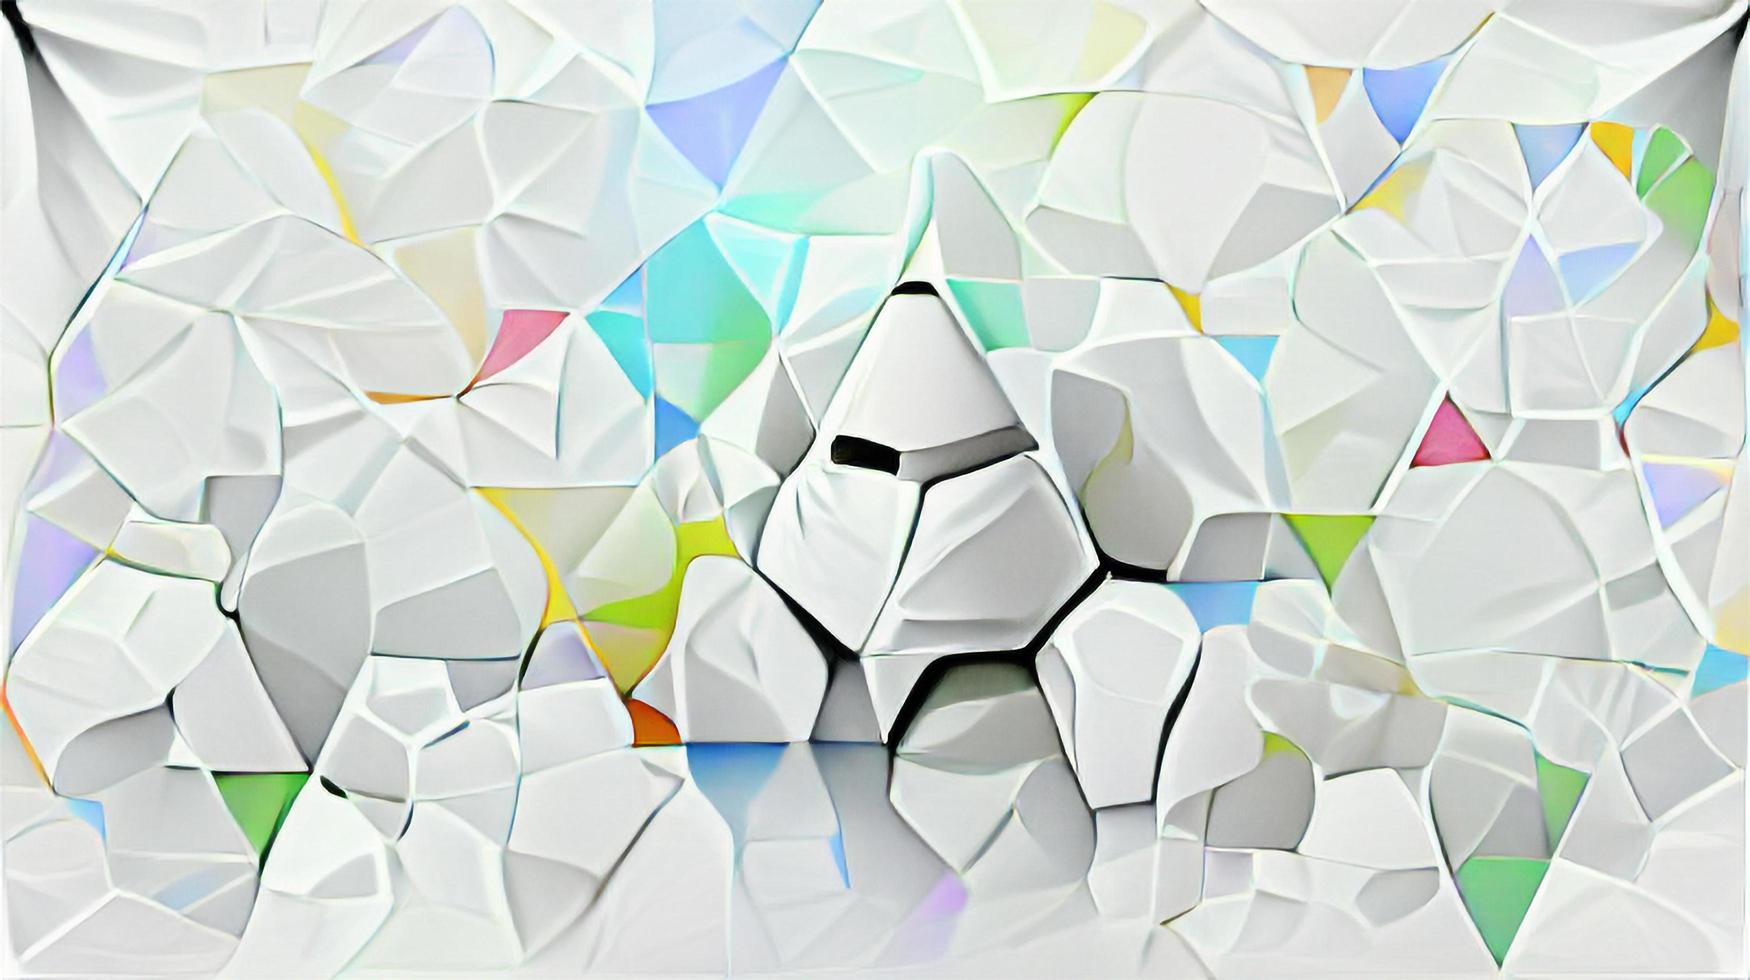 sfondi geometrici di cristallo strutturati bianchi astratti per la progettazione grafica foto